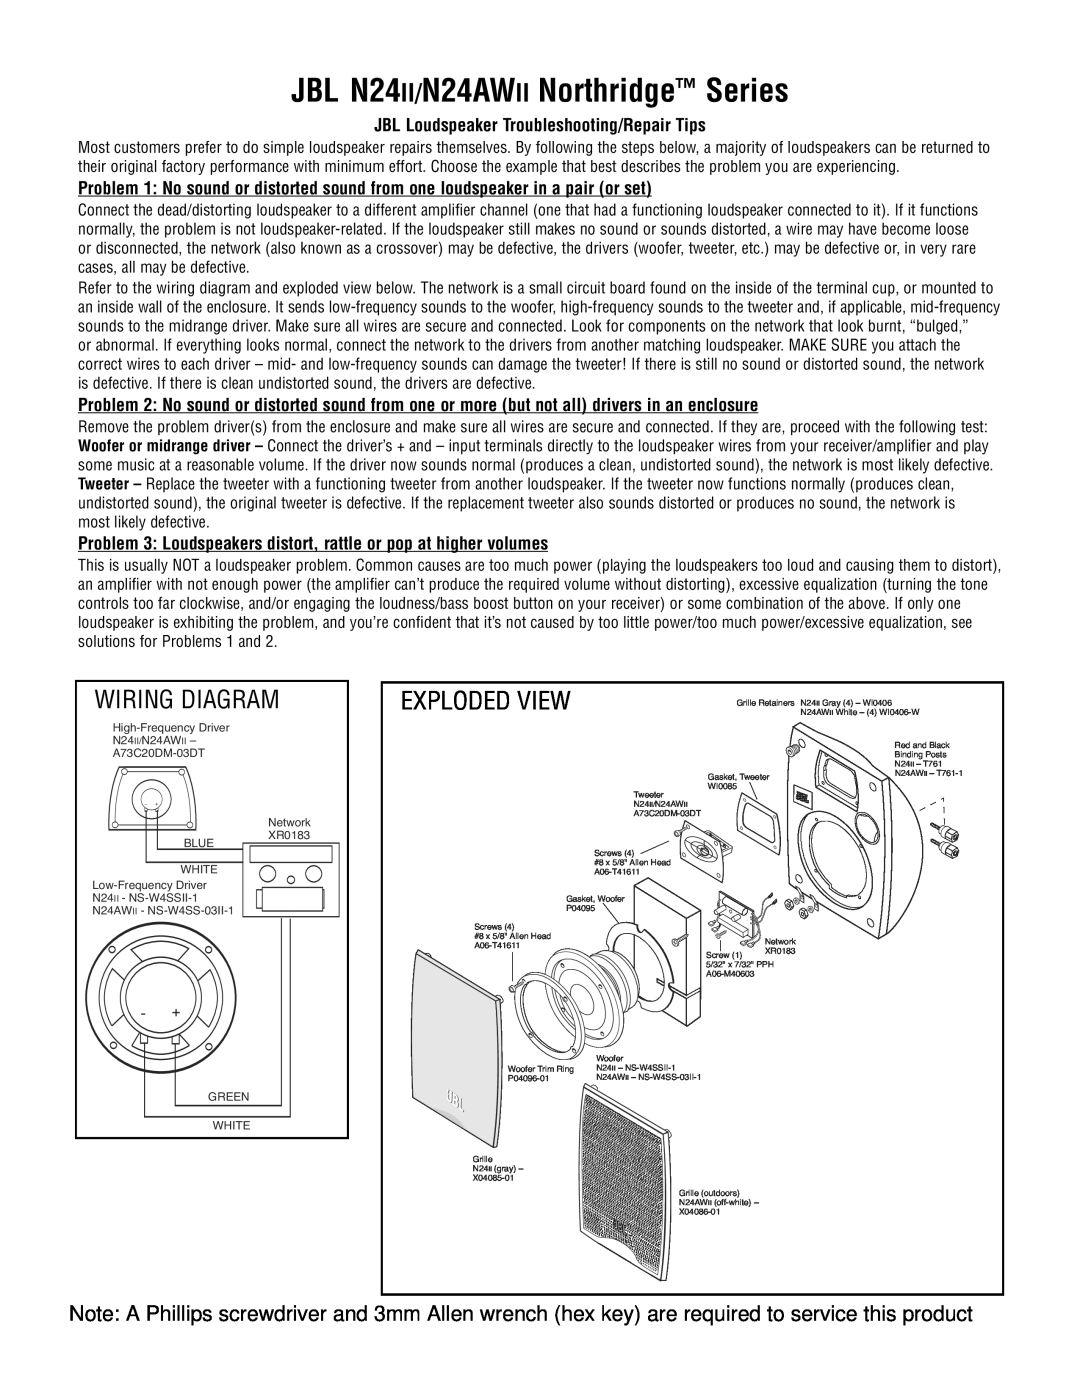 JBL manual JBL N24II/N24AWII Northridge Series, Exploded View, Wiring Diagram 